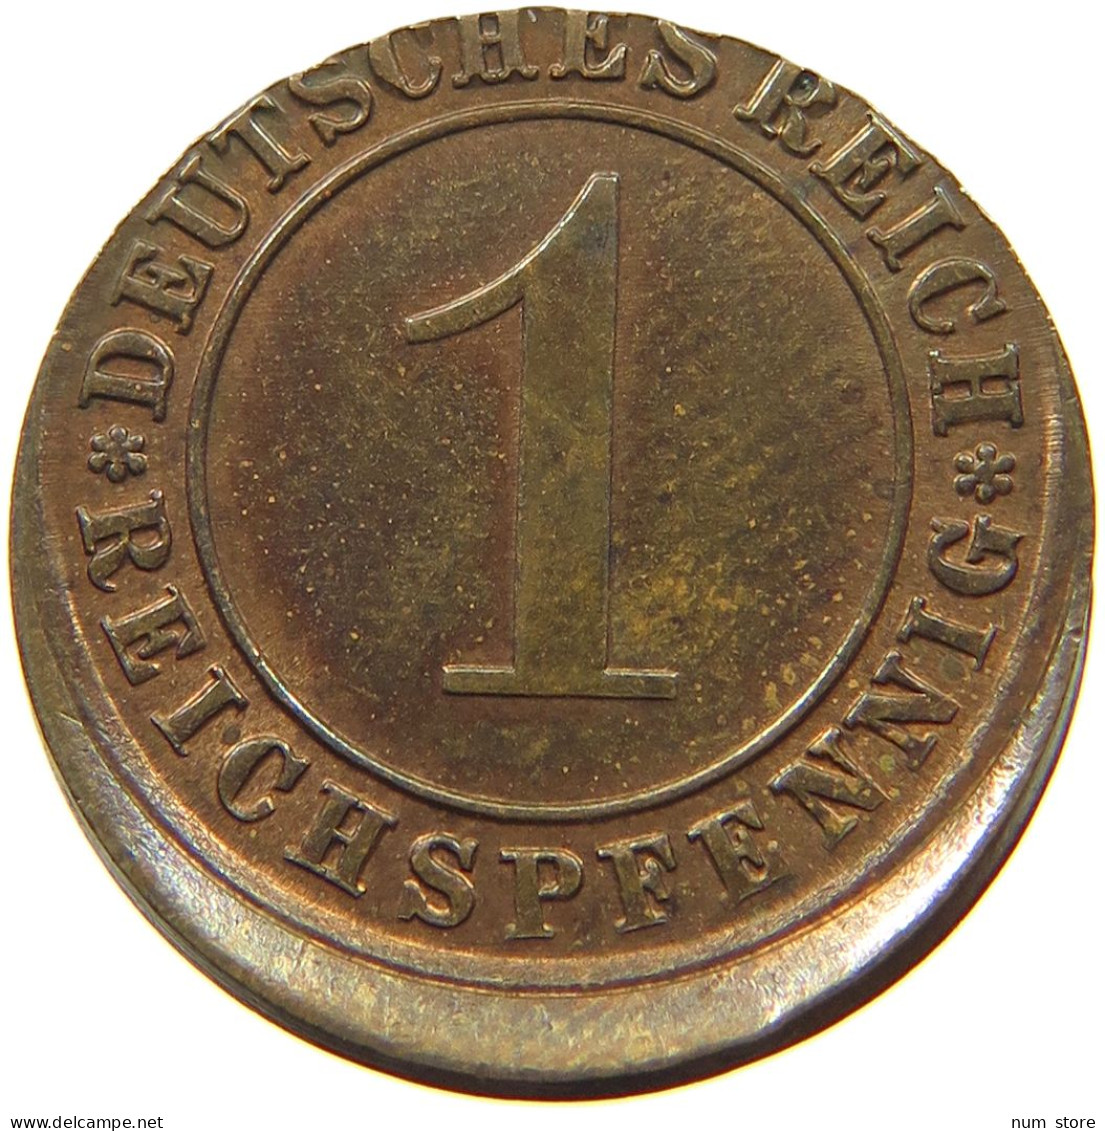 WEIMAR 1 PFENNIG 1931 A 1 PFG. FEHLPRÄGUNG - 1931 A #MA 000302 - 1 Renten- & 1 Reichspfennig